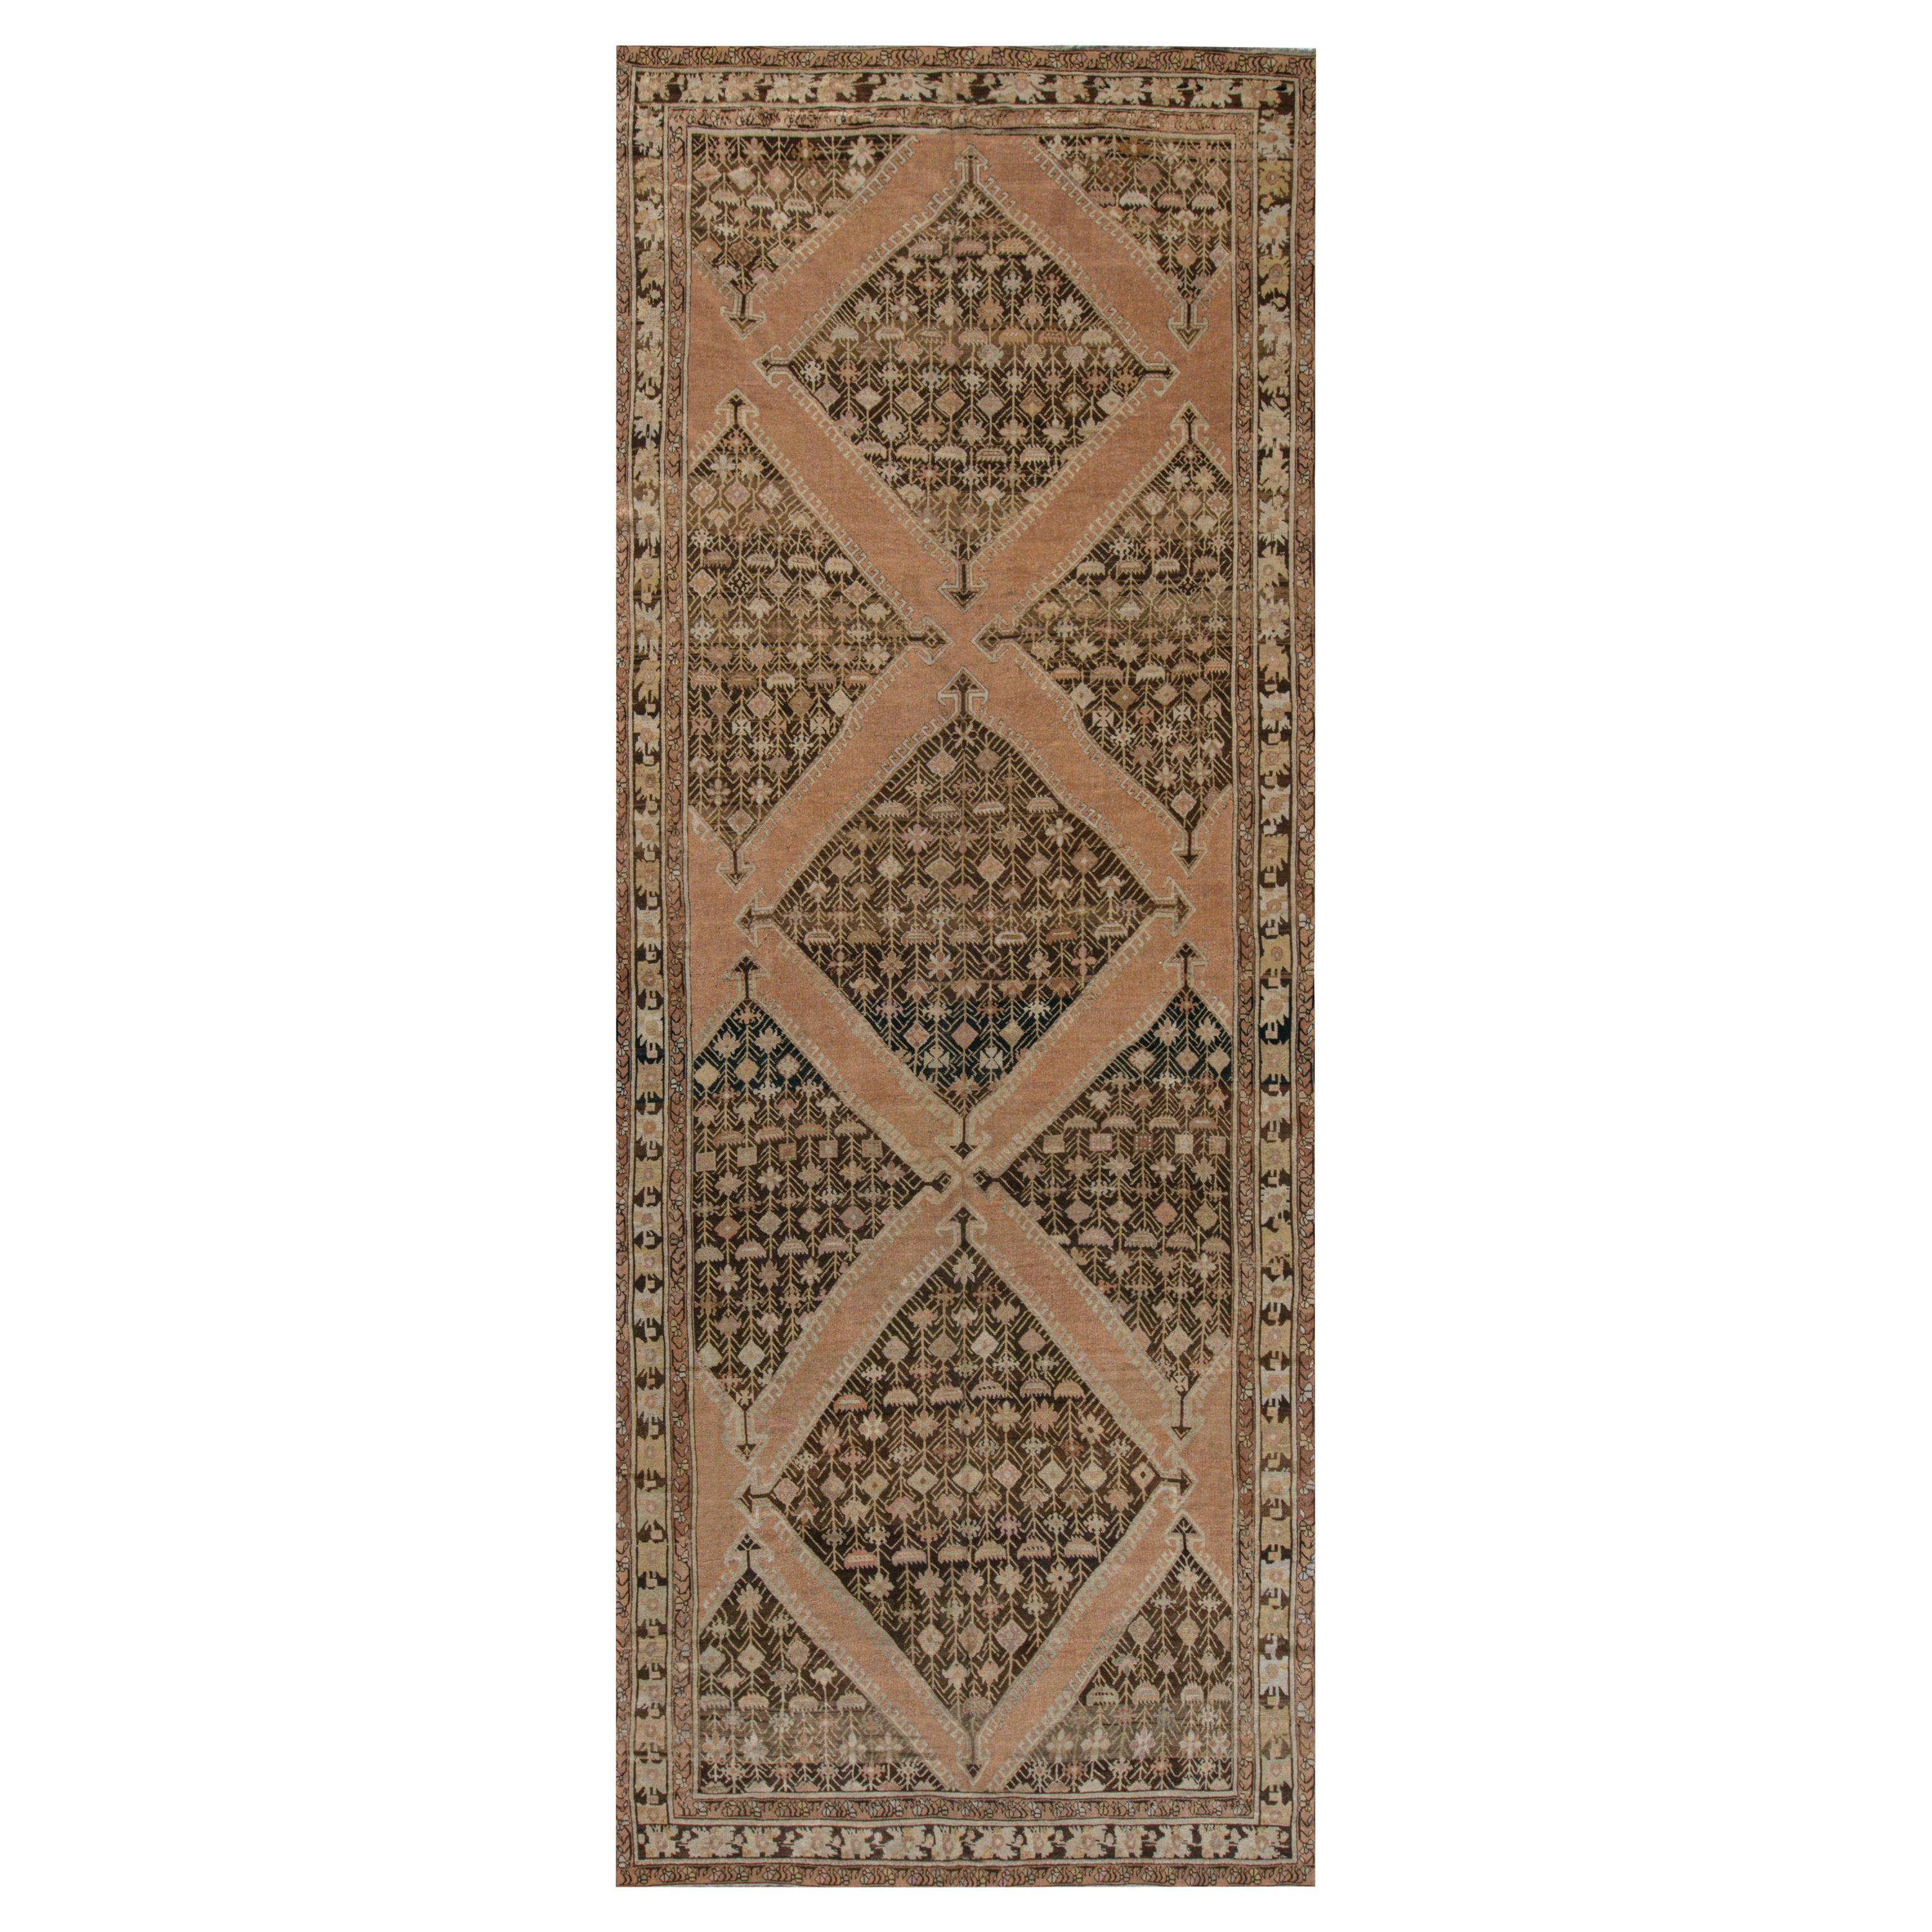 Russischer Karabagh-Teppich aus dem 19. Jahrhundert, handgefertigt aus Wolle